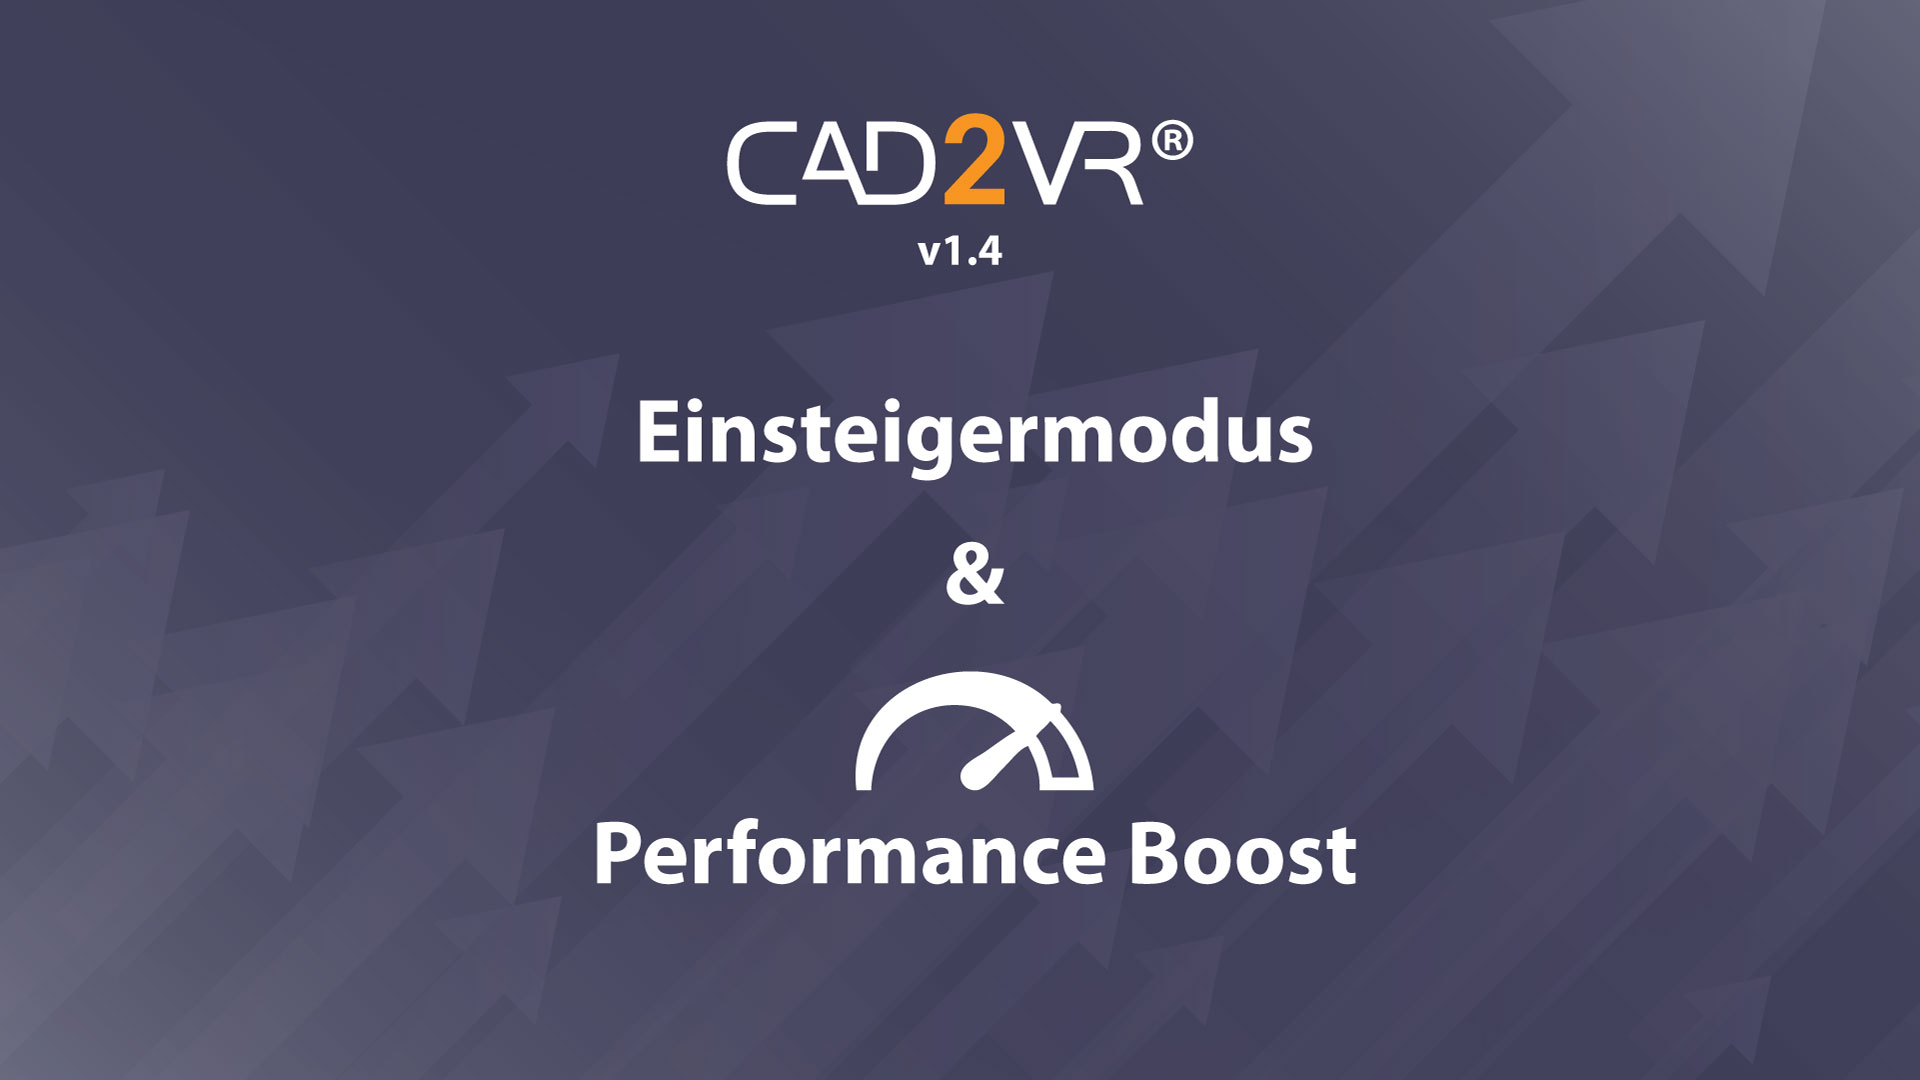 Mit dem neuen Update erhält CAD2VR® einen Einsteigermodus und einen Performance Boost.